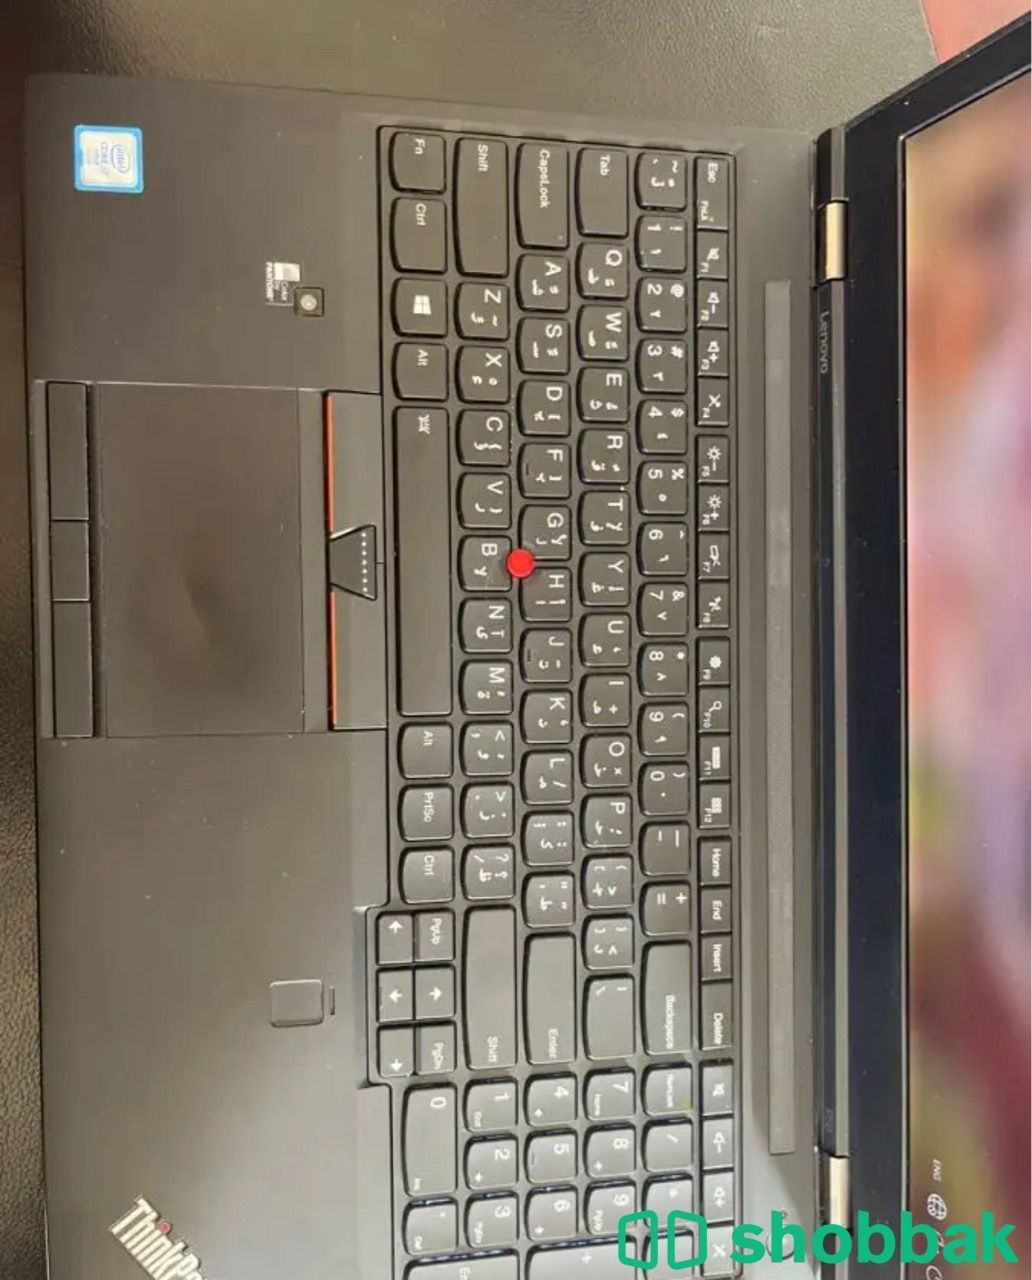 لابتوب لينوفو Laptop Lenovo شباك السعودية